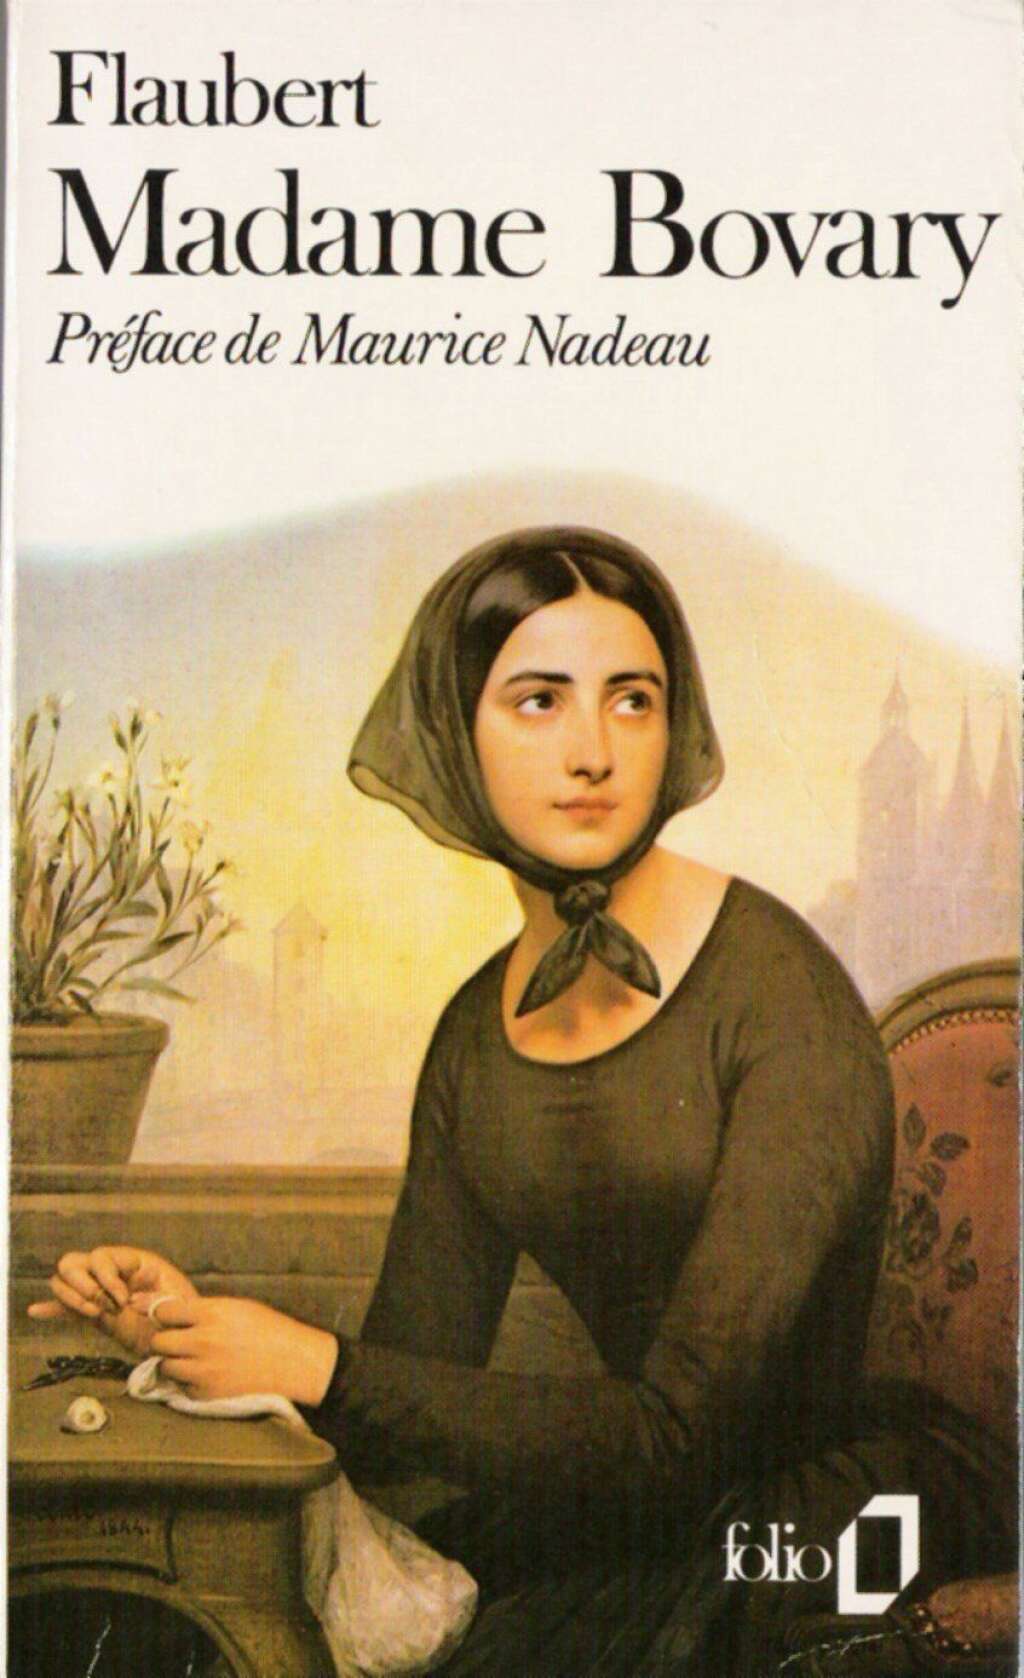 Madame Bovary, Gustave Flaubert - <p><u>Description de l'éditeur:</u></p>  <p>"C'est l'histoire d'une femme mal mariée, de son médiocre époux, de ses amants égoïstes et vains, de ses rêves, de ses chimères, de sa mort. C'est l'histoire d'une province étroite, dévote et bourgeoise. C'est, aussi, l'histoire du roman français. Rien, dans ce tableau, n'avait de quoi choquer la société du Second Empire. Mais, inexorable comme une tragédie, flamboyant comme un drame, mordant comme une comédie, le livre s'était donné une arme redoutable: le style. Pour ce vrai crime, Flaubert se retrouva en correctionnelle. Aucun roman n'est innocent: celui-là moins qu'un autre. Lire Madame Bovary, au XXIe siècle, c'est affronter le scandale que représente une œuvre aussi sincère qu'impérieuse. Dans chacune de ses phrases, Flaubert a versé une dose de cet arsenic dont Emma Bovary s'empoisonne: c'est un livre offensif, corrosif, dont l'ironie outrage toutes nos valeurs, et la littérature même, qui ne s'en est jamais vraiment remise."</p>